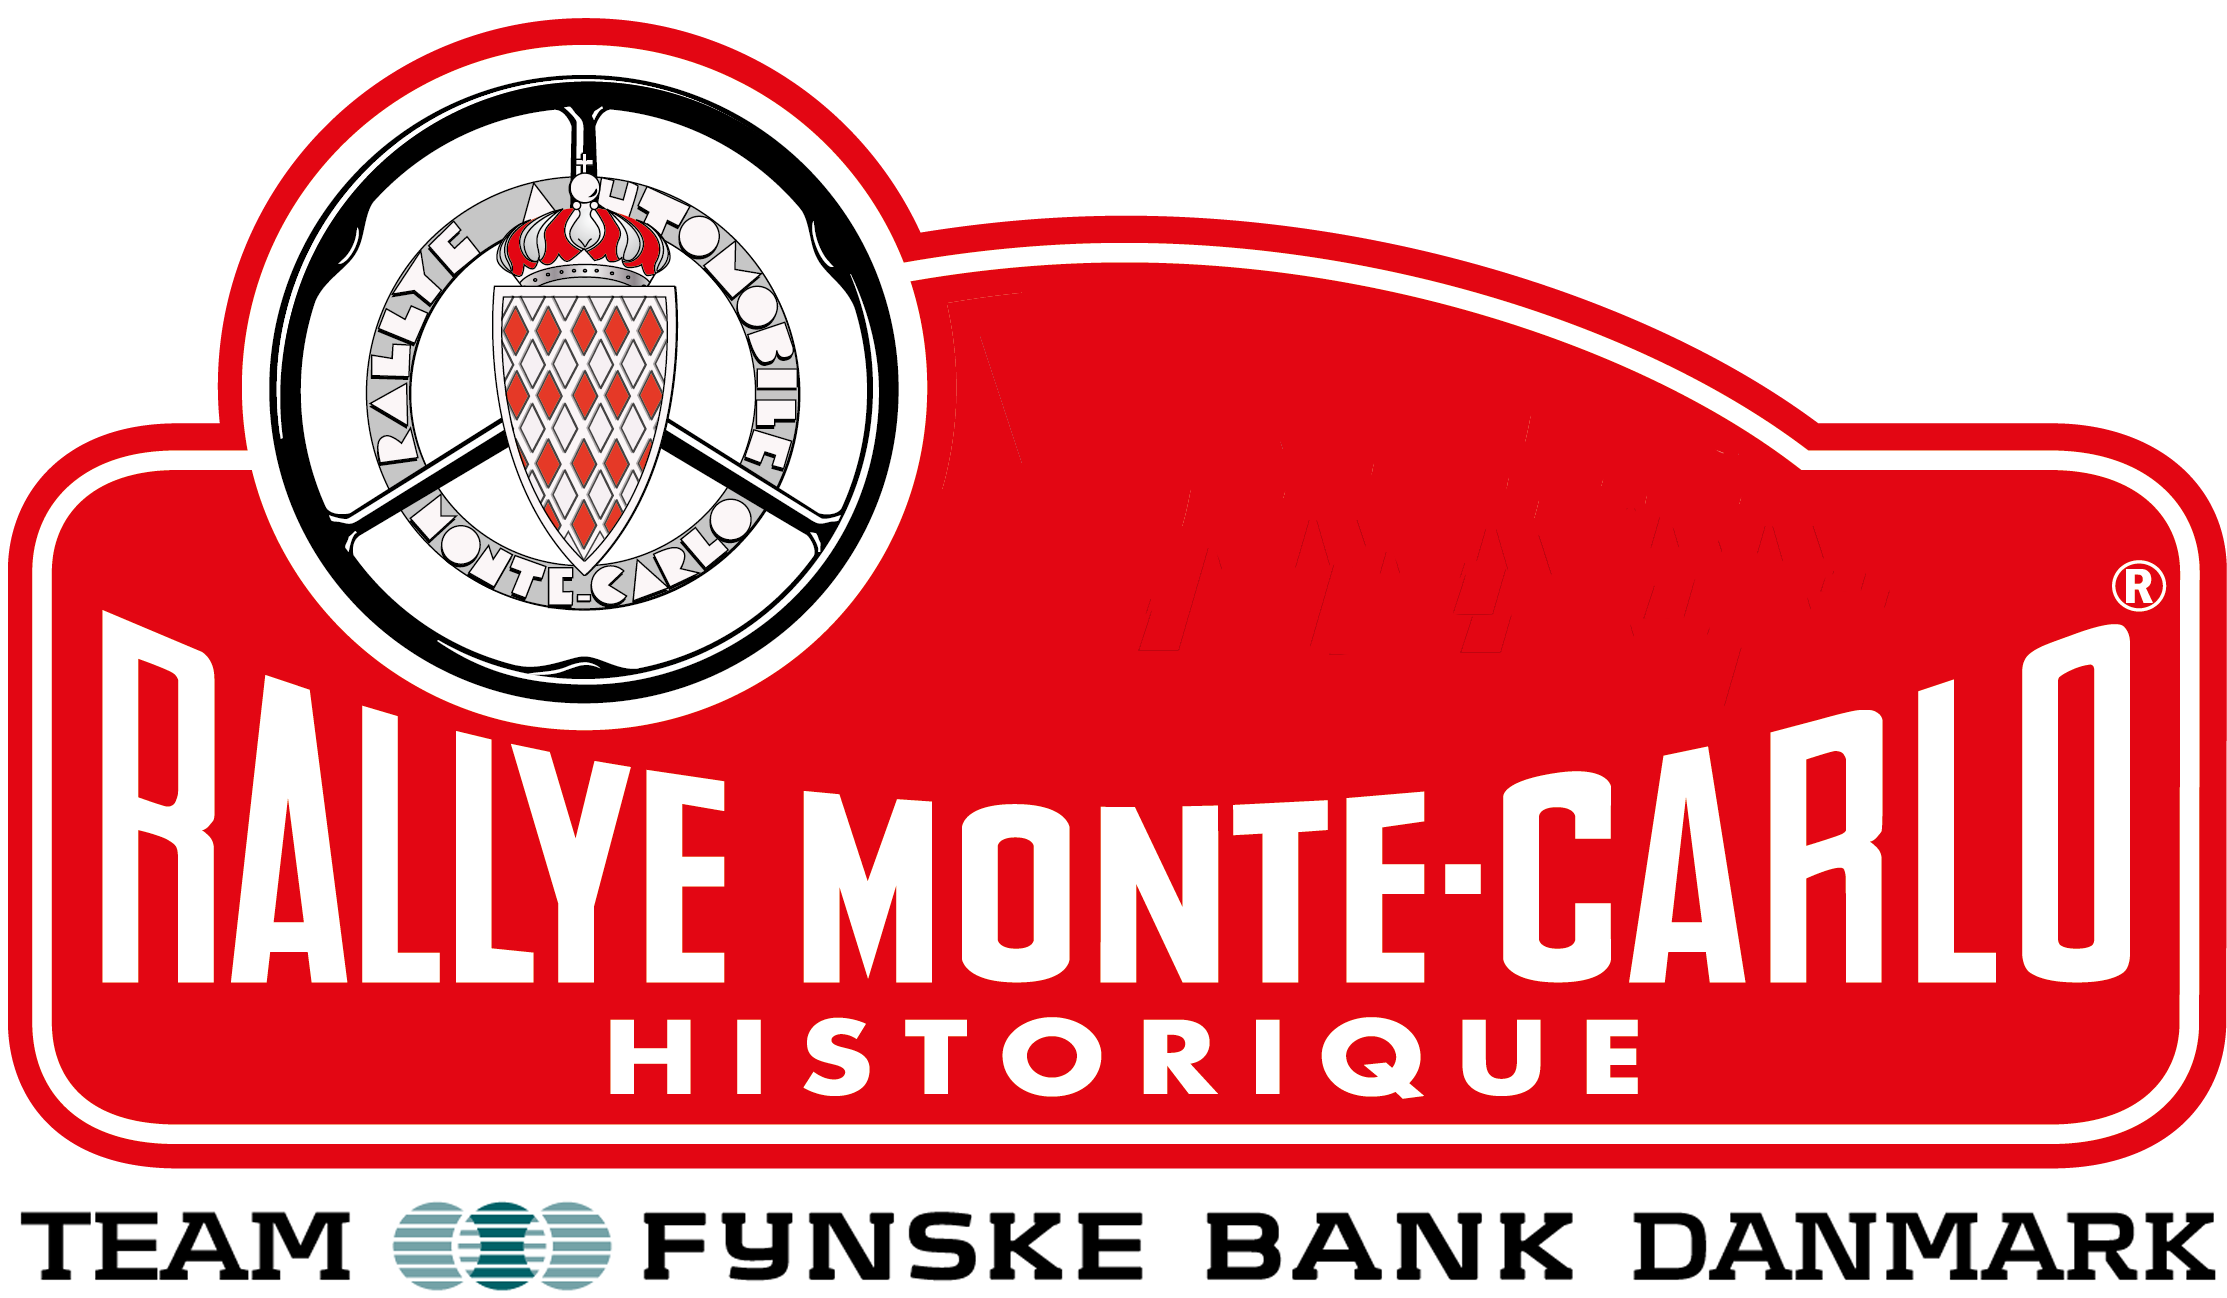 Rally Monte Carlo Historique DK